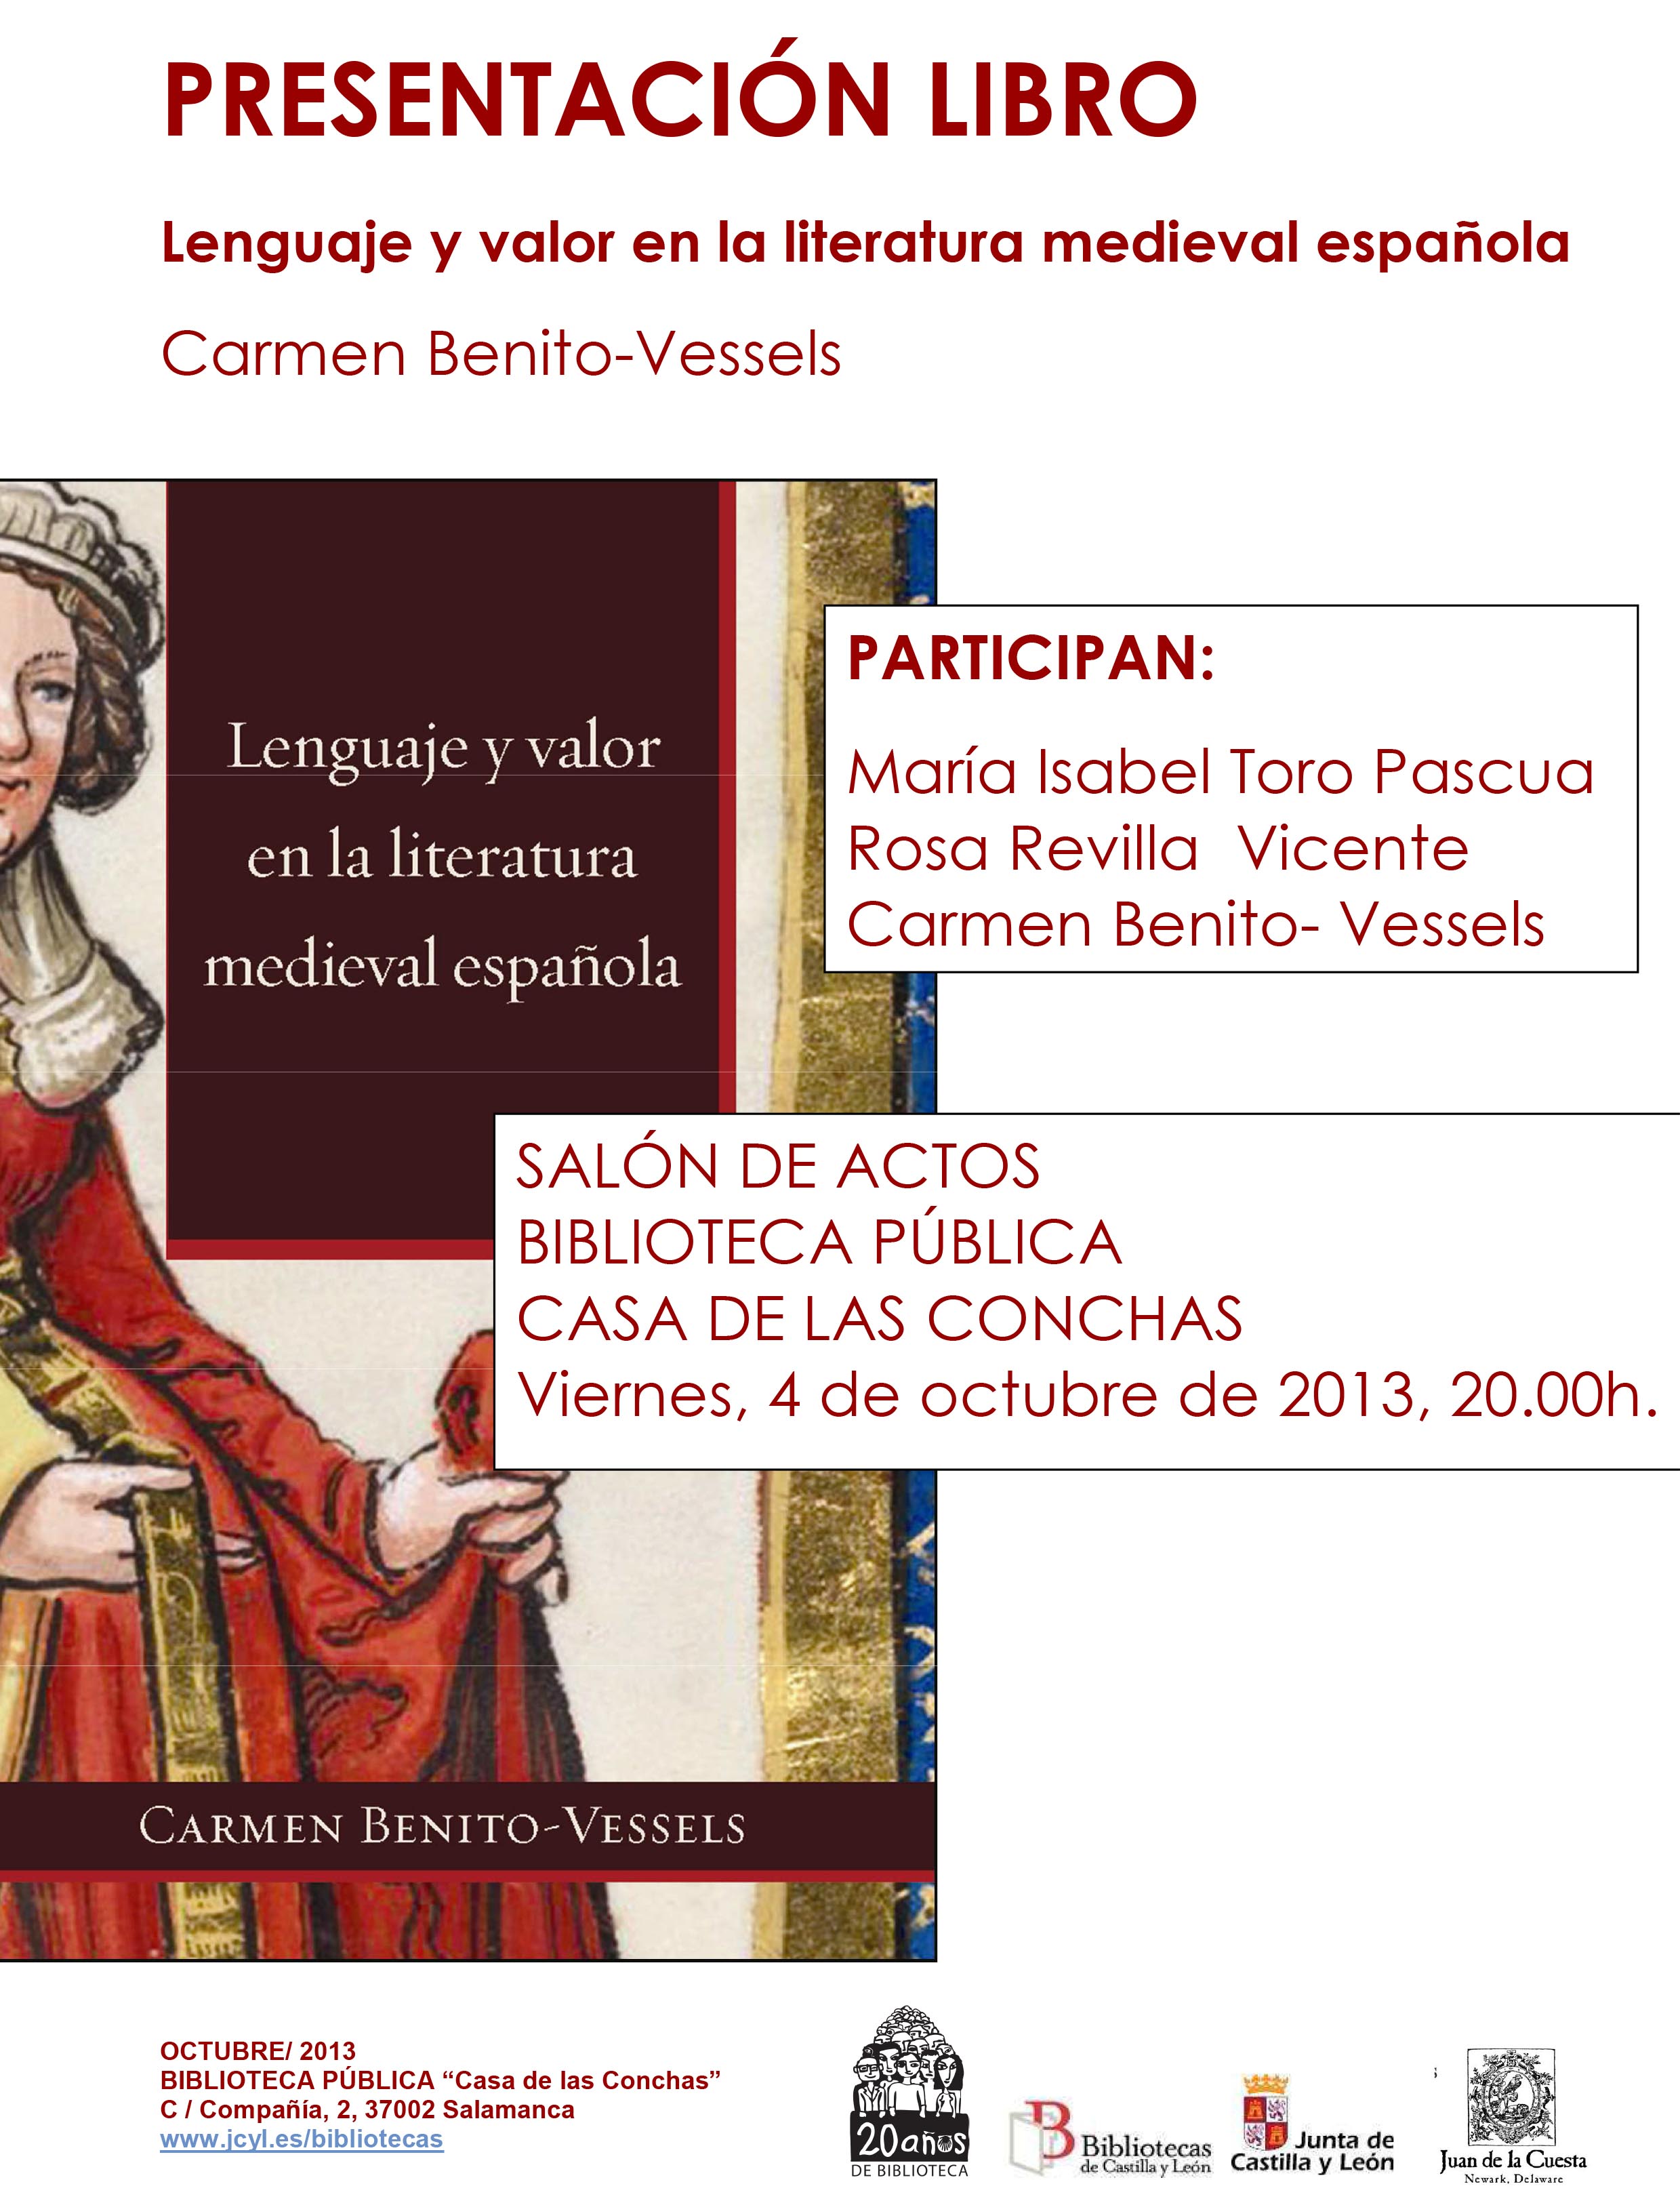 Carmen Benito-Vessels Book Presentation